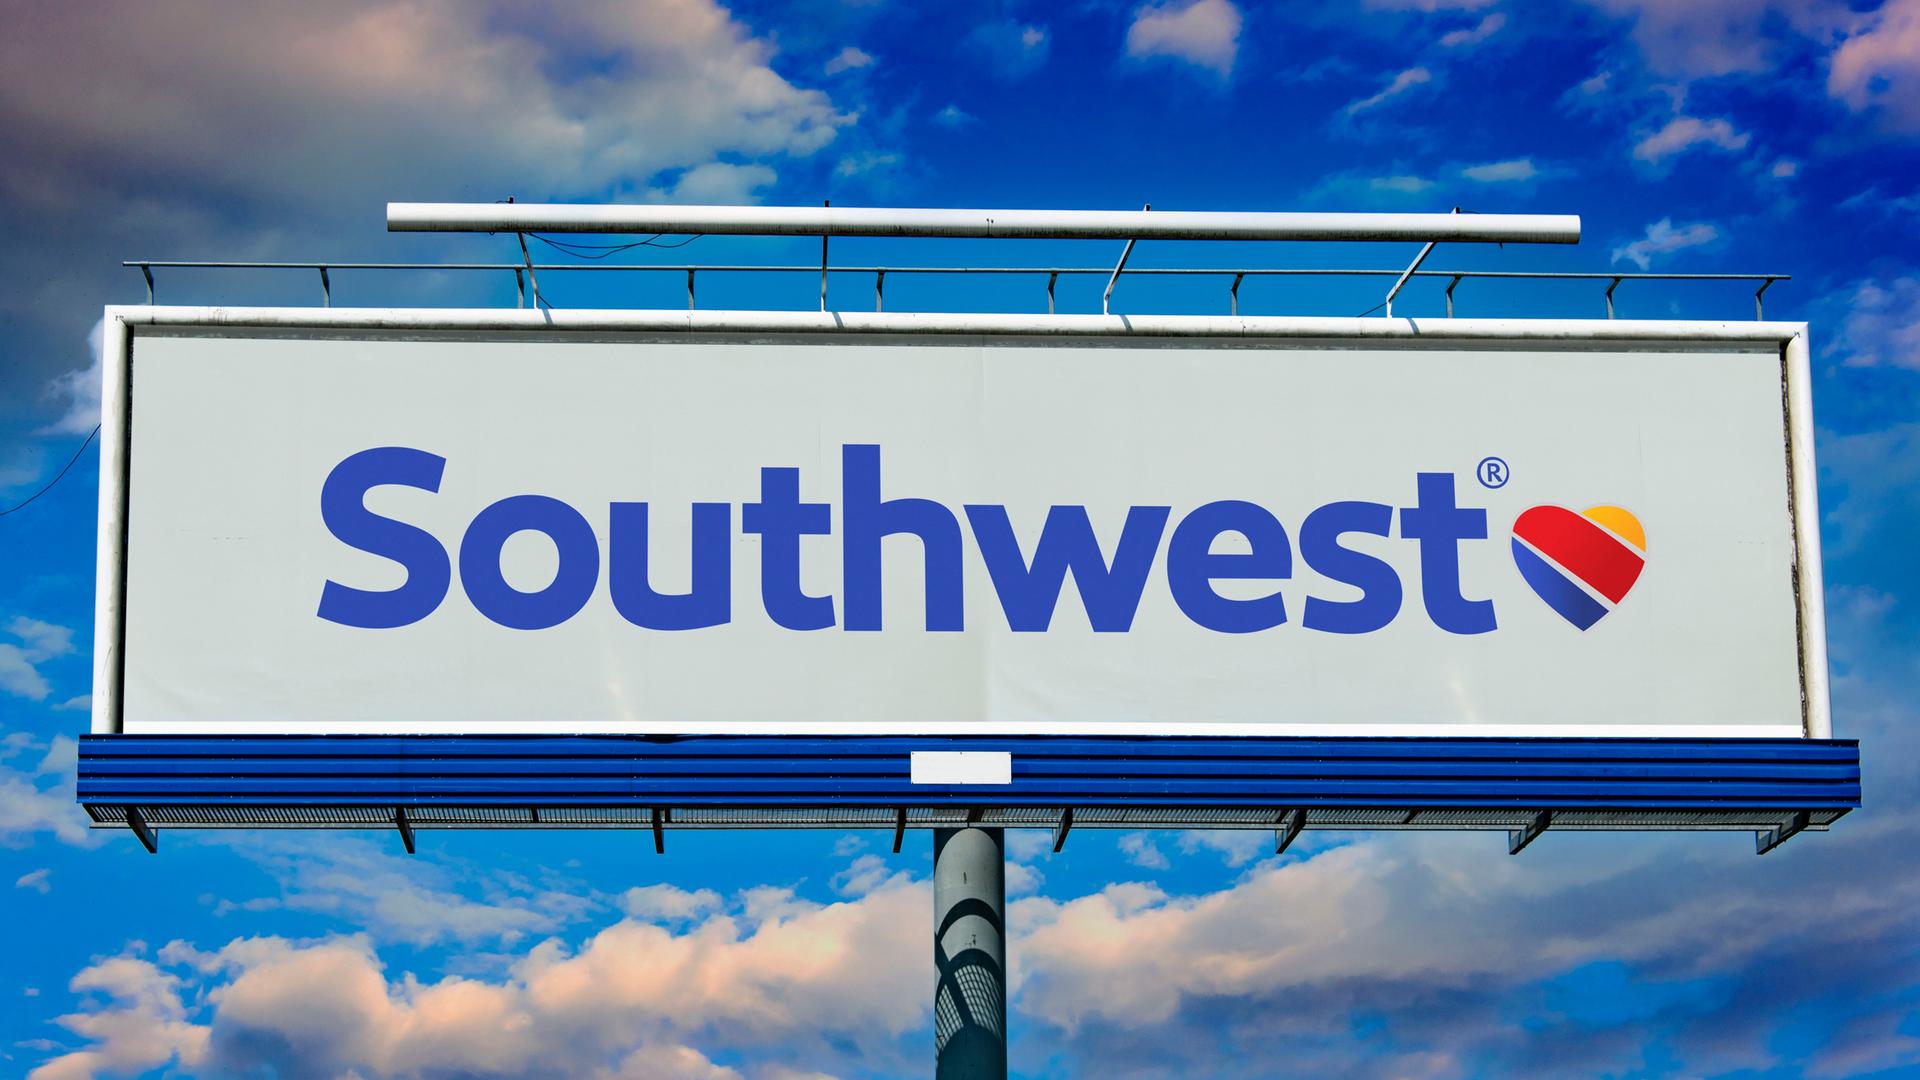 Eine Leuchtreklame der Fluggesellschaft Southwest Airlines. Dahinter blauer Himmel mit weißen Wolken.